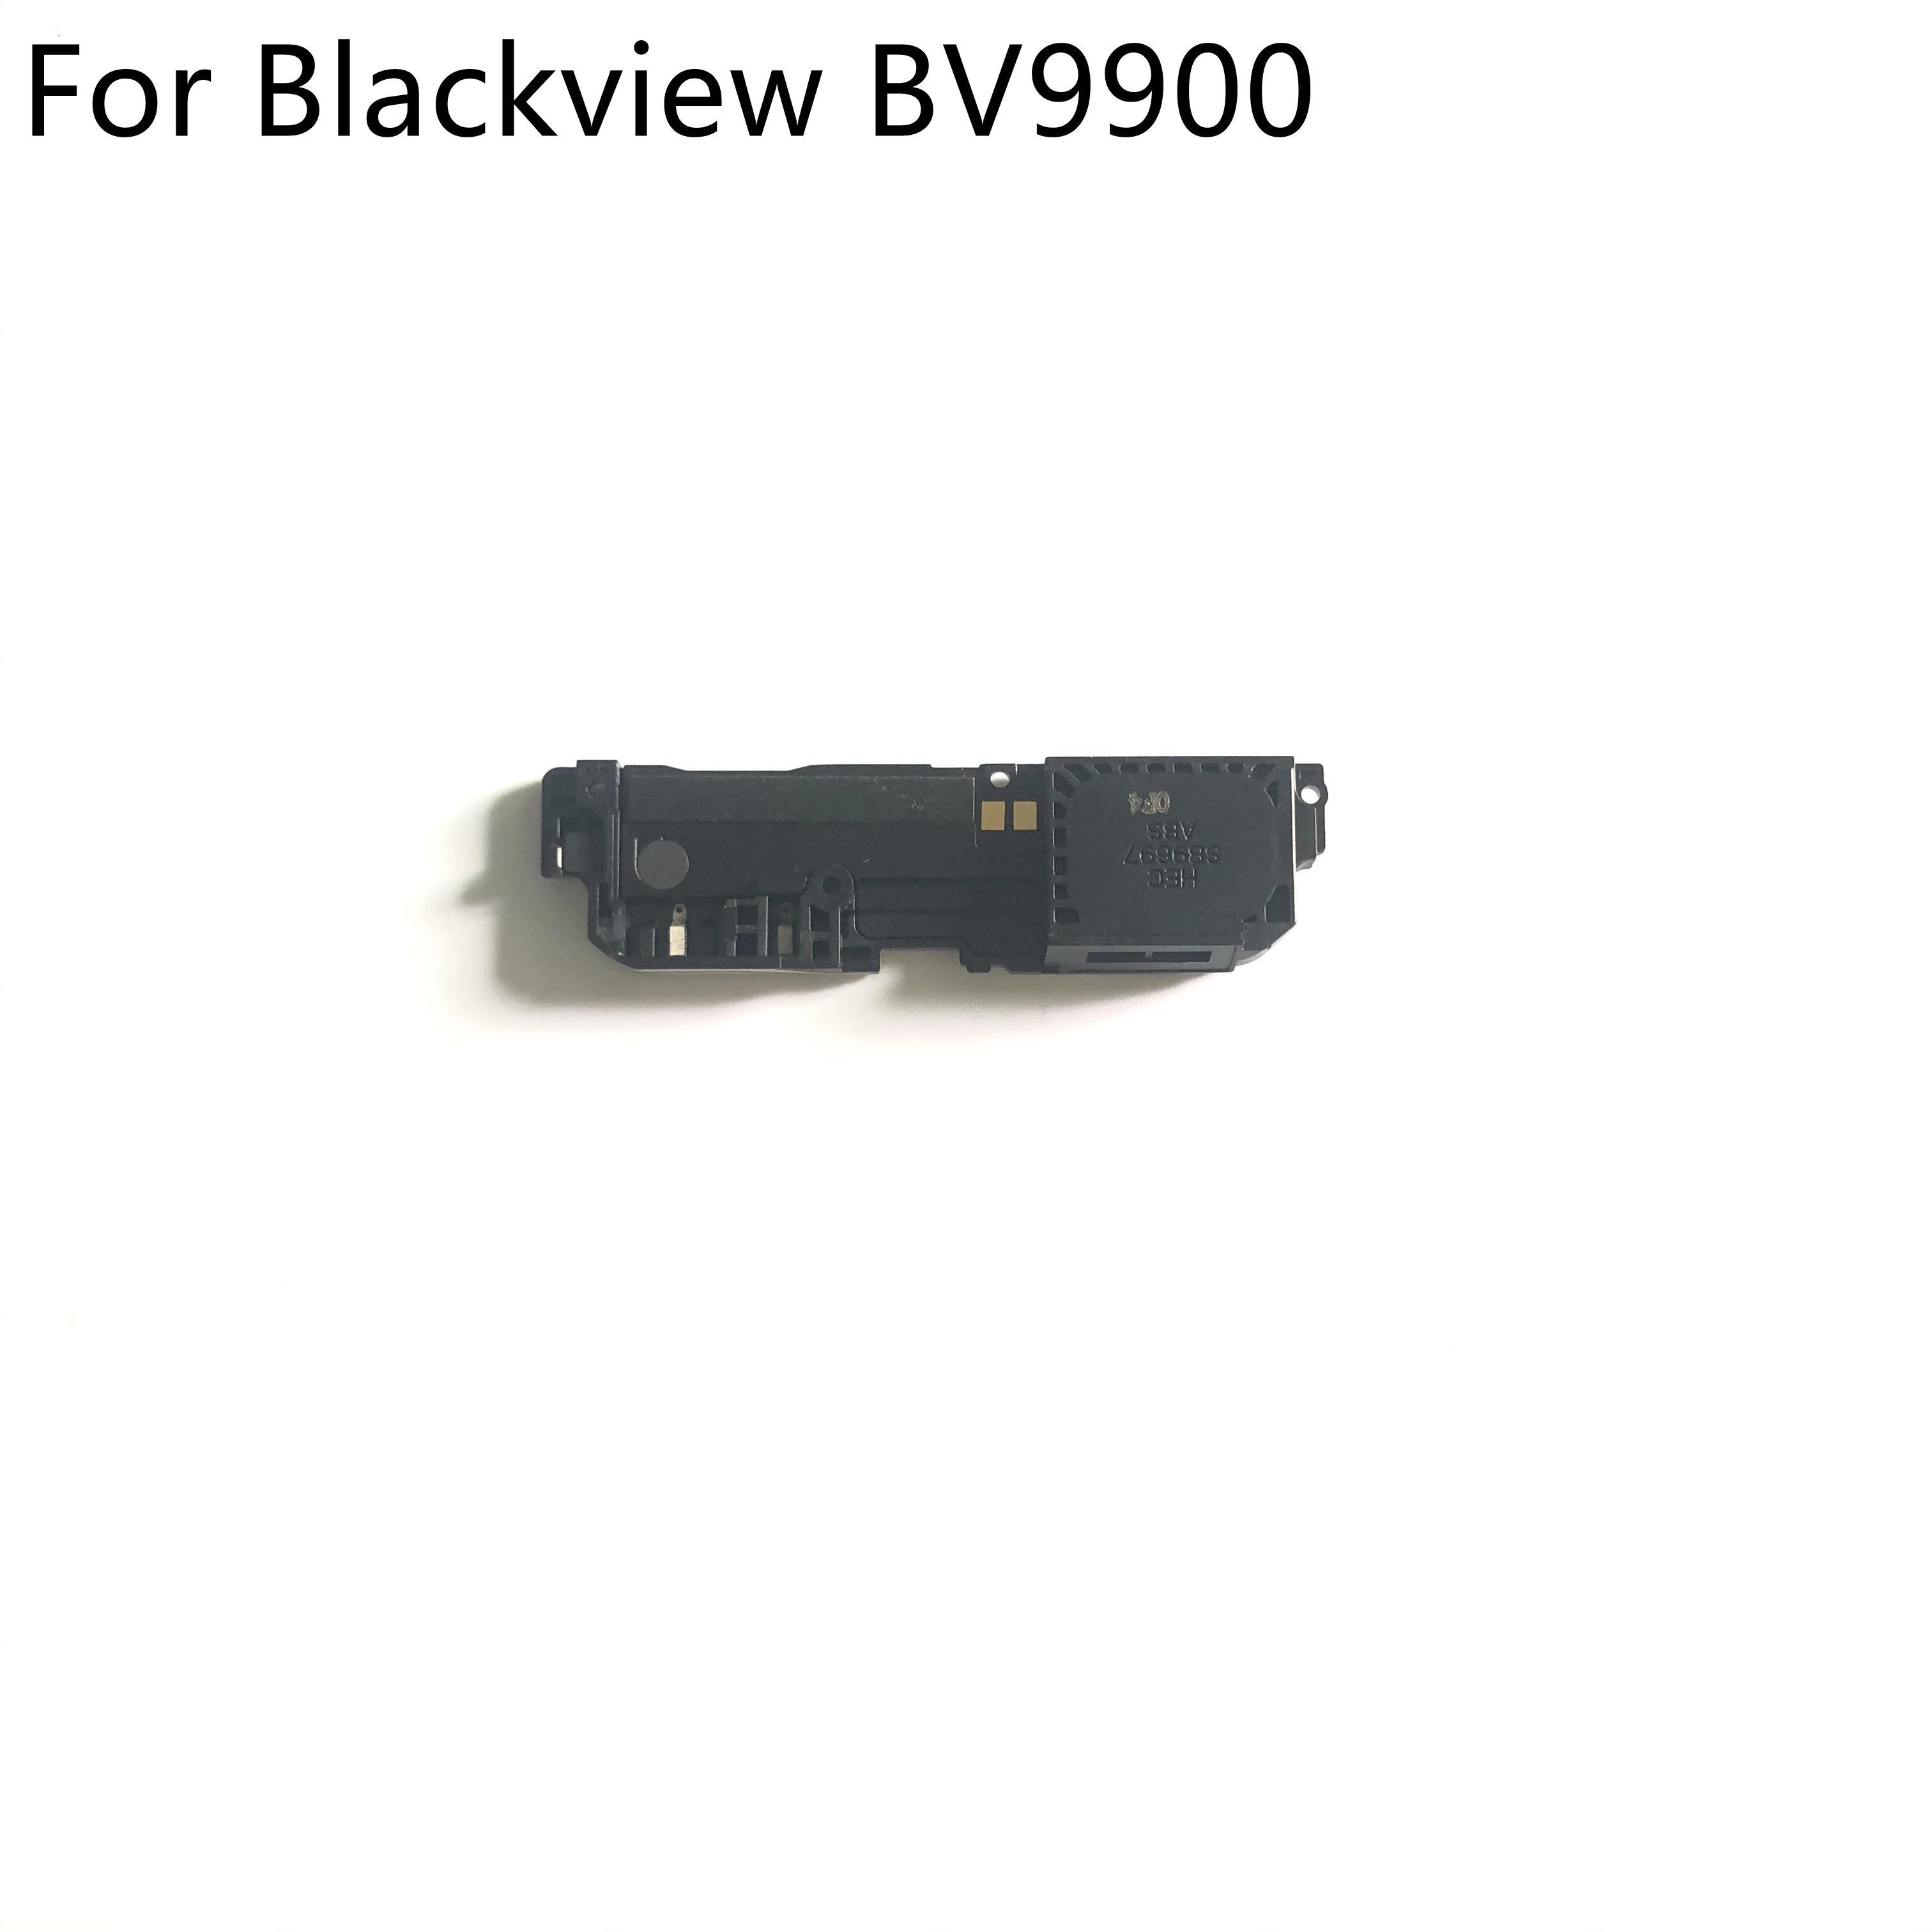 Blackview BV9900 Originalus Naujas Garsiai Garsiakalbis Buzzer Varpininkas + Antena Blackview BV9900 Pro 48MP Quad Galinio vaizdo Kamera, išmaniuoju telefonu Fre